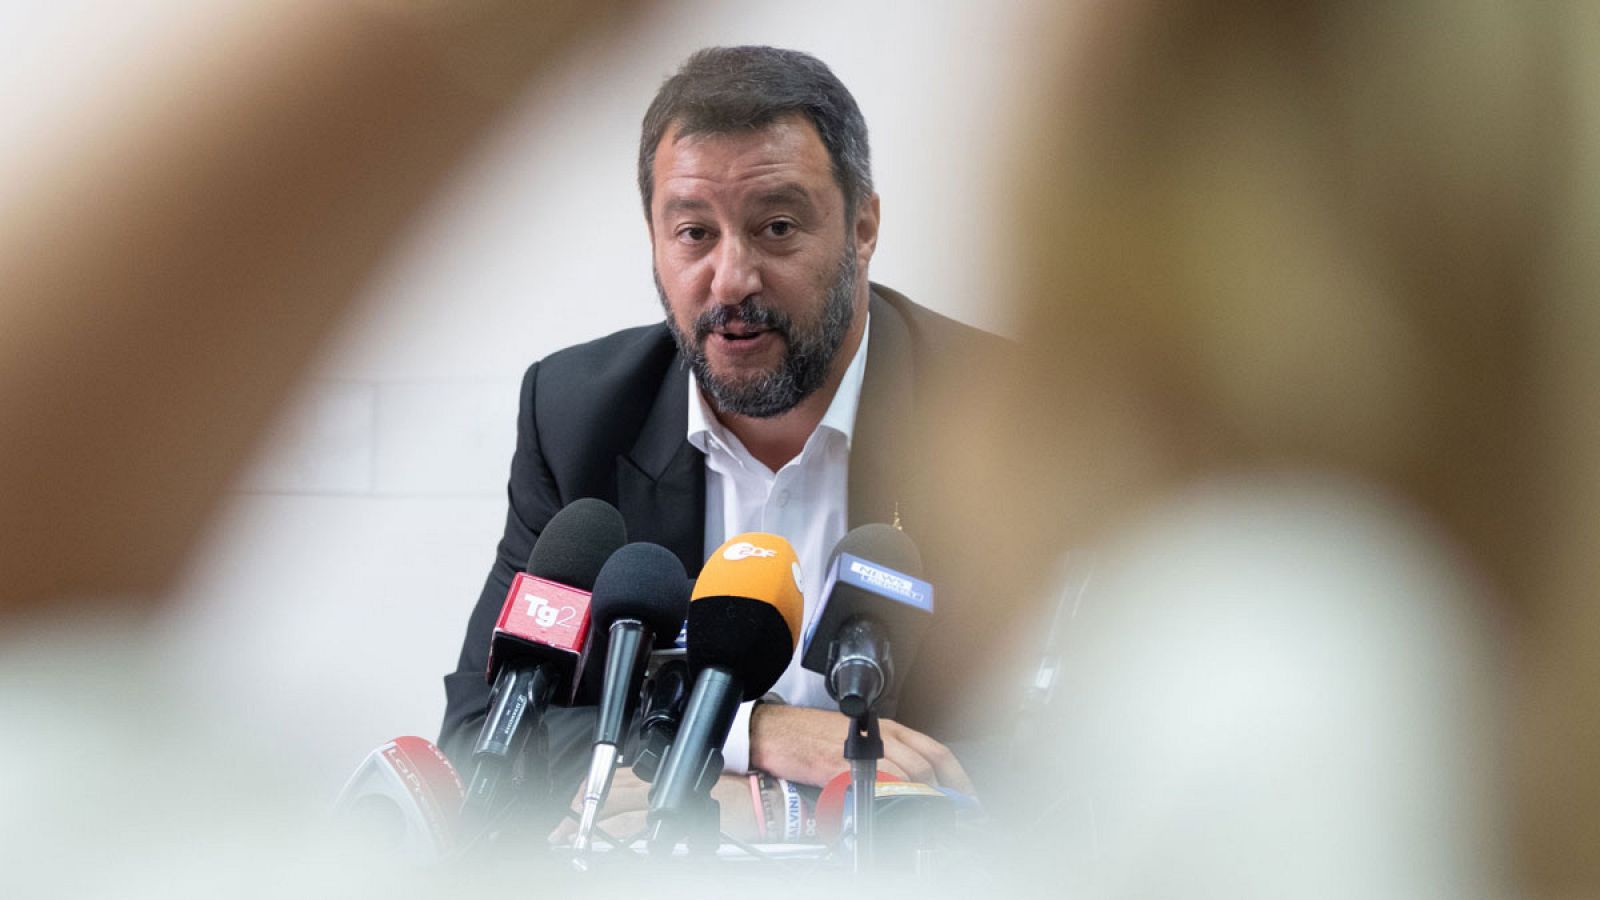 El ministro del Interior italiano, Matteo Salvini, persiste en no permitir el desembarco